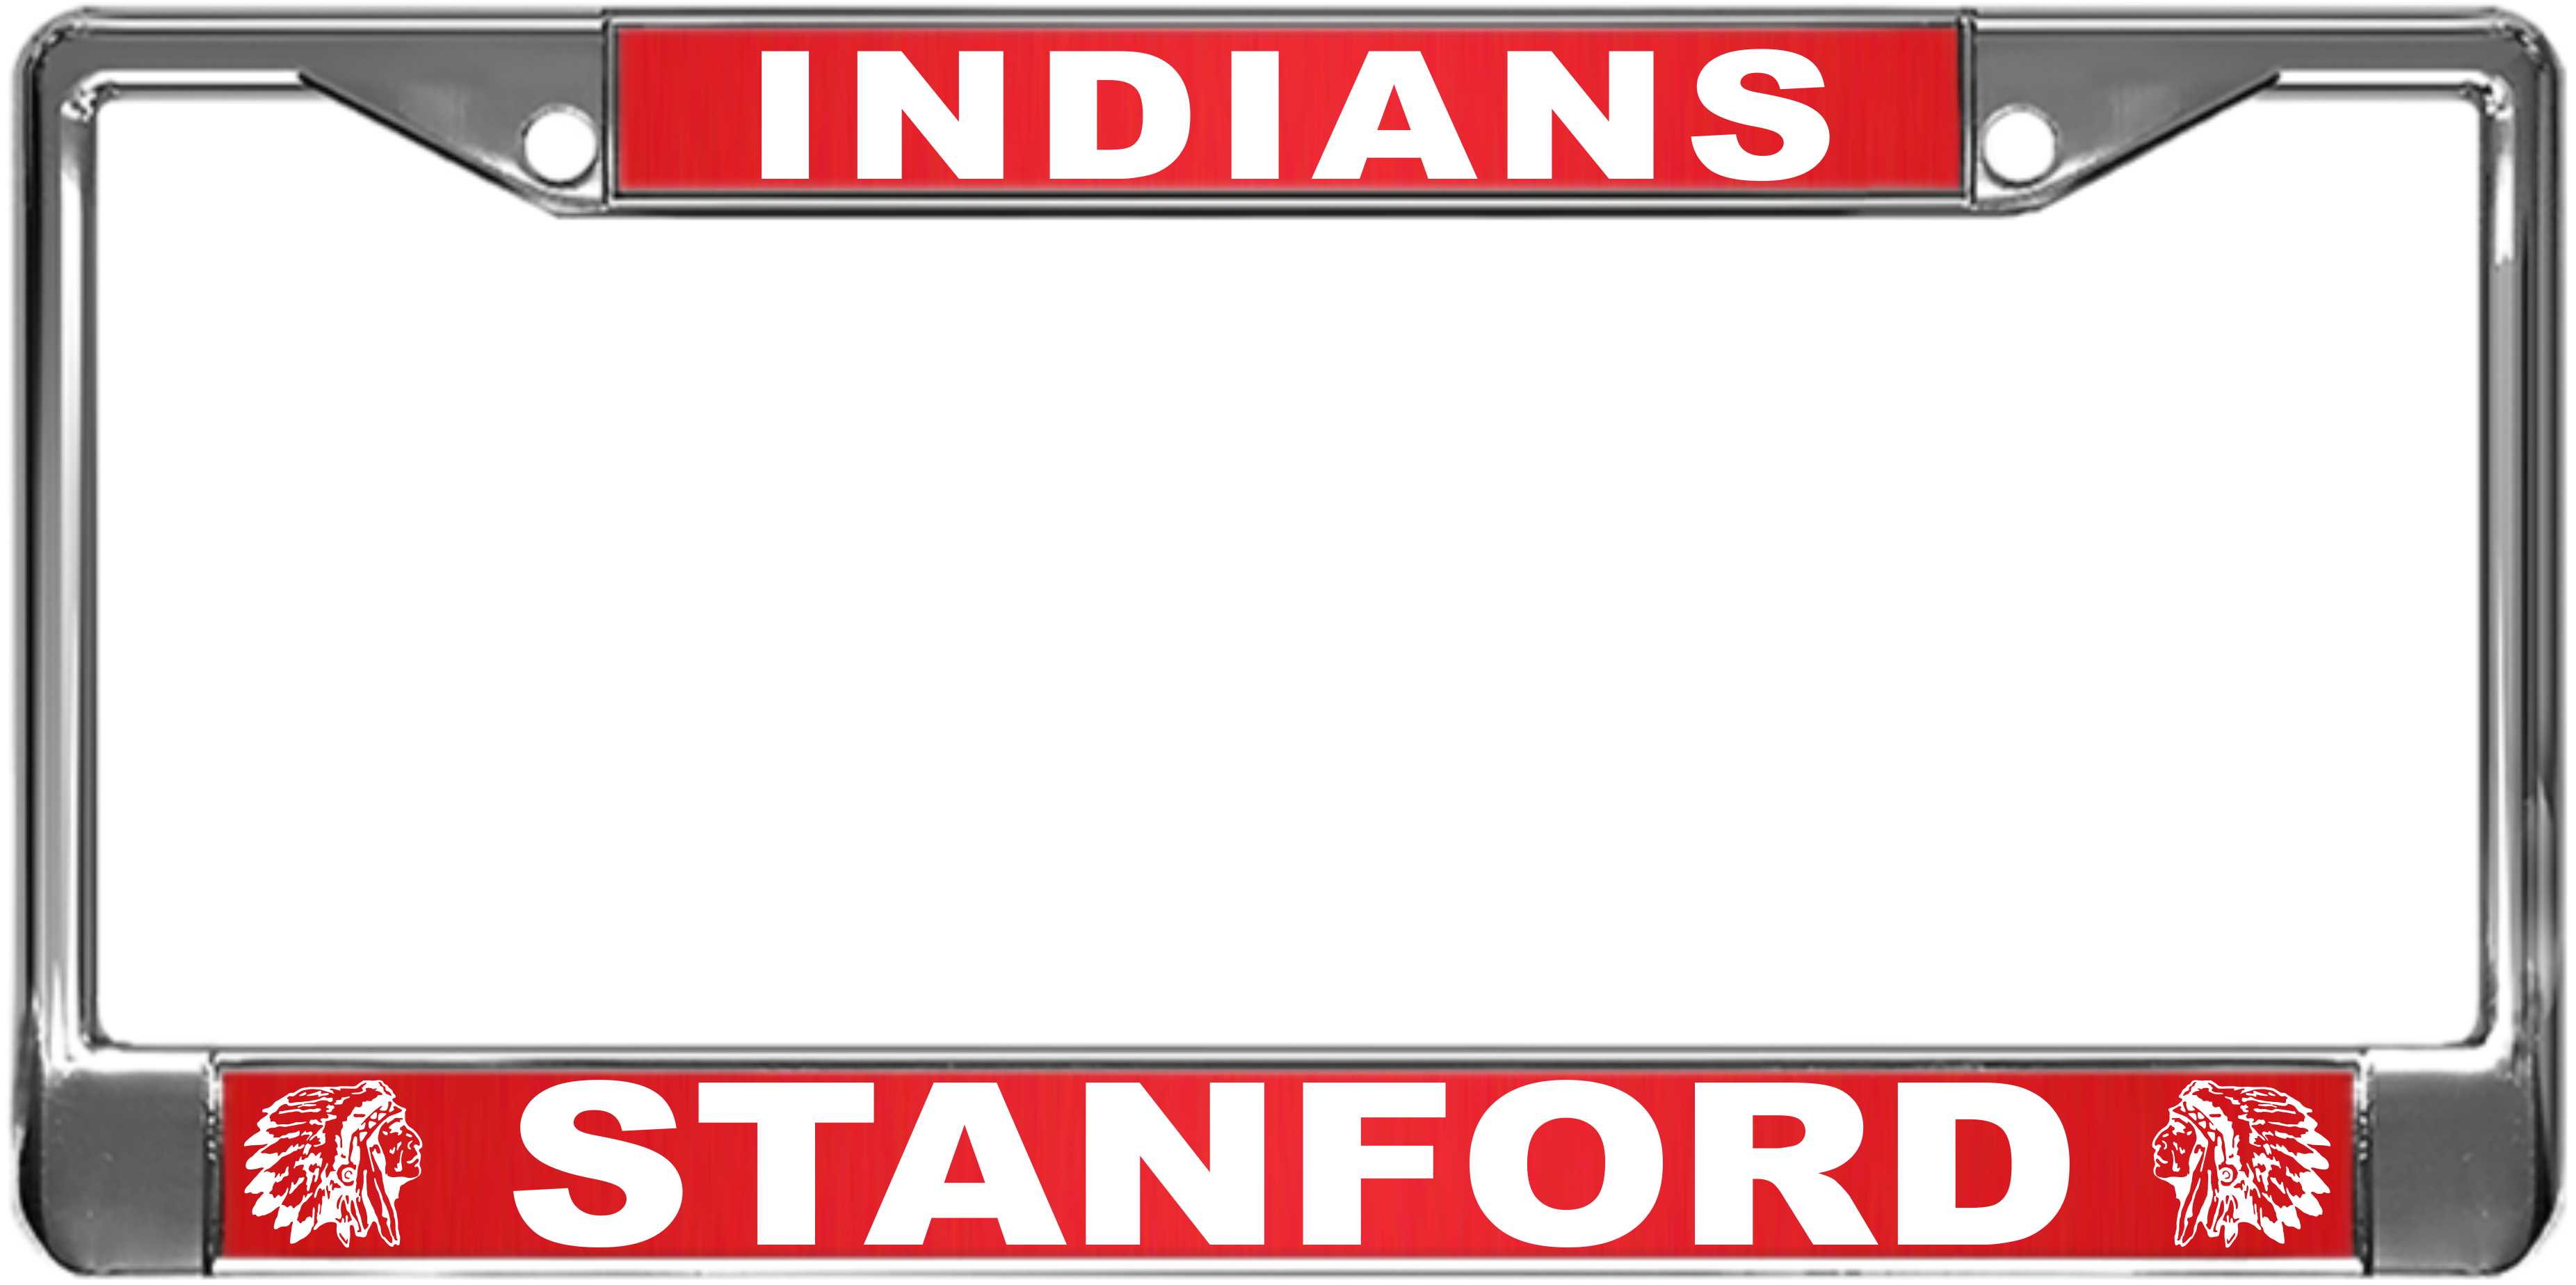 INDIANS - Custom License Plate Frame ref. Order #30870